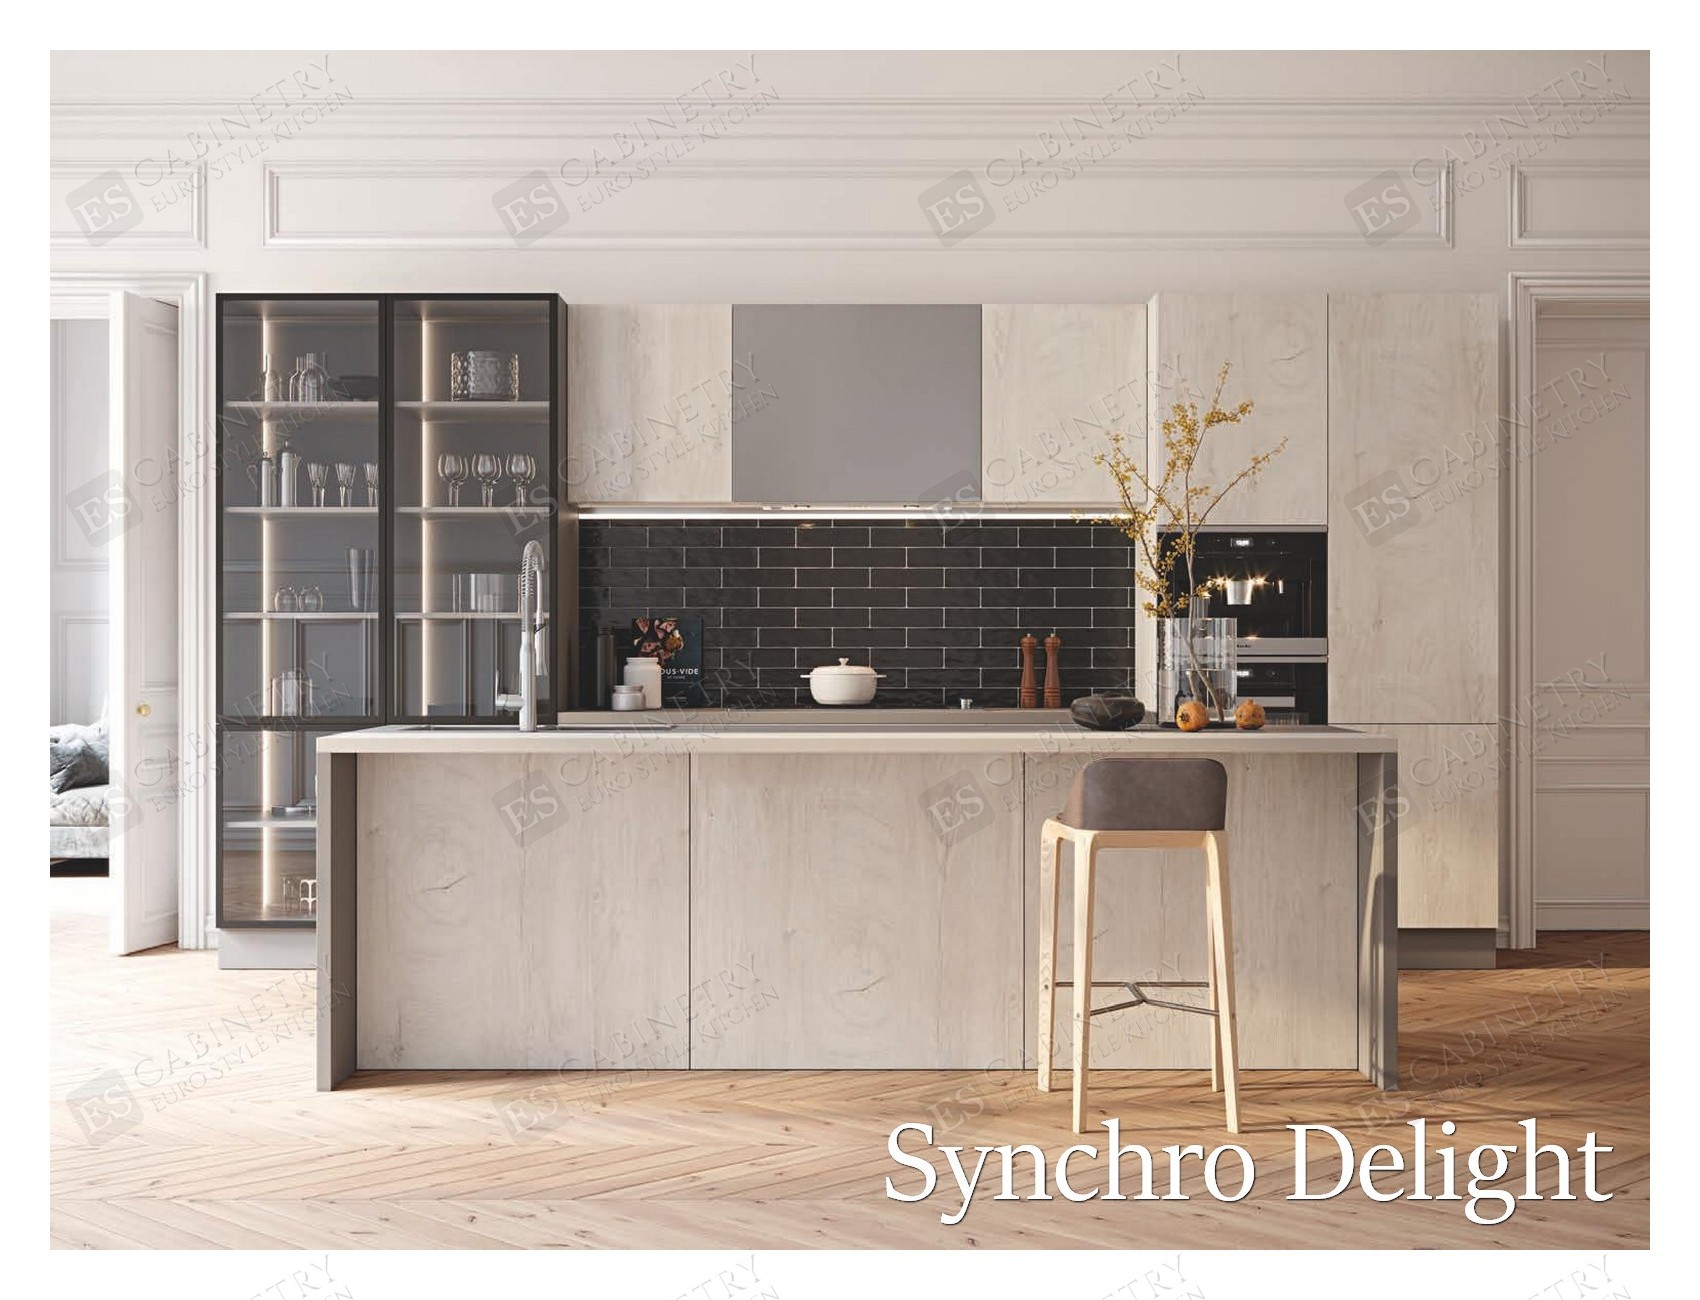 Synchro Delight | Euro kitchen design